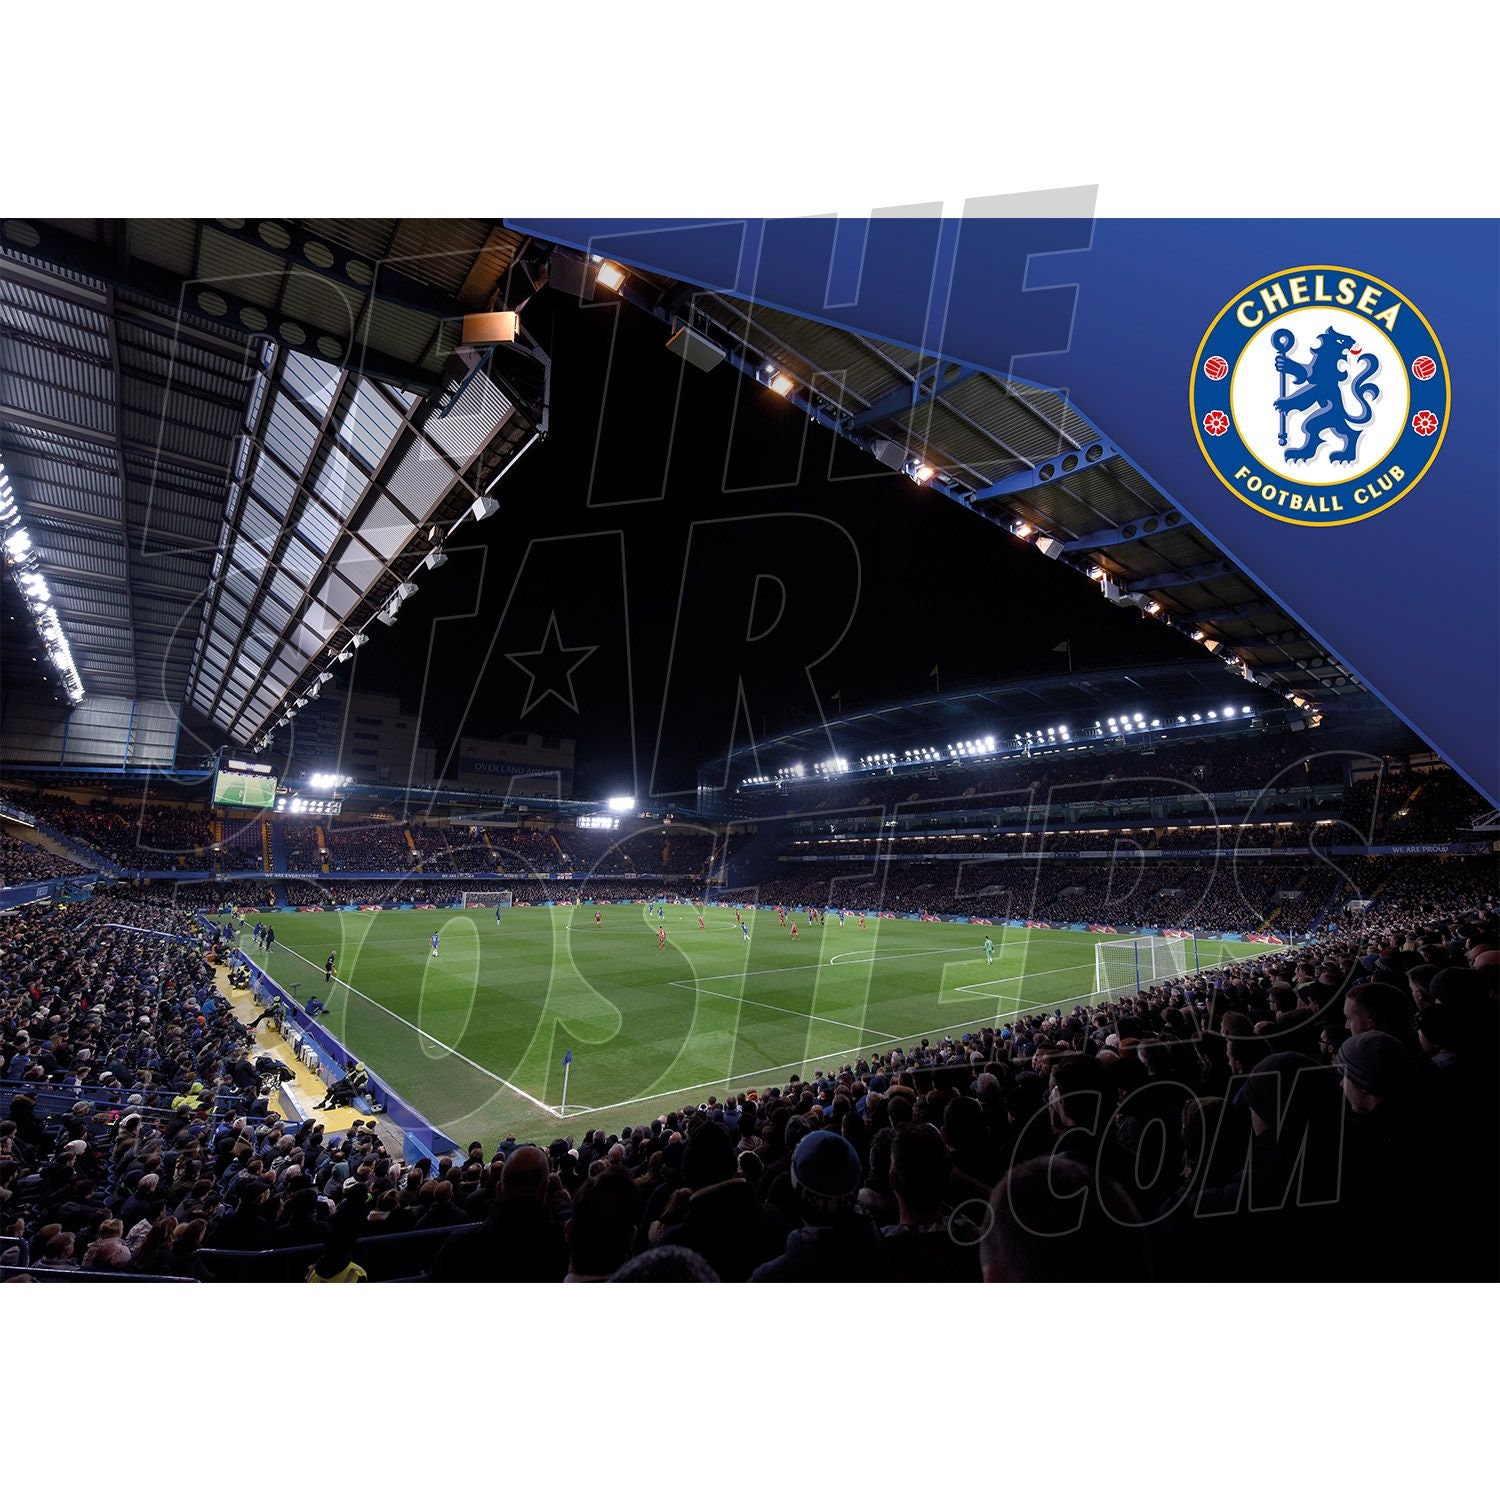 tale flugt kapok Chelsea FC Stamford Bridge Stadium Poster Officially - Etsy Denmark